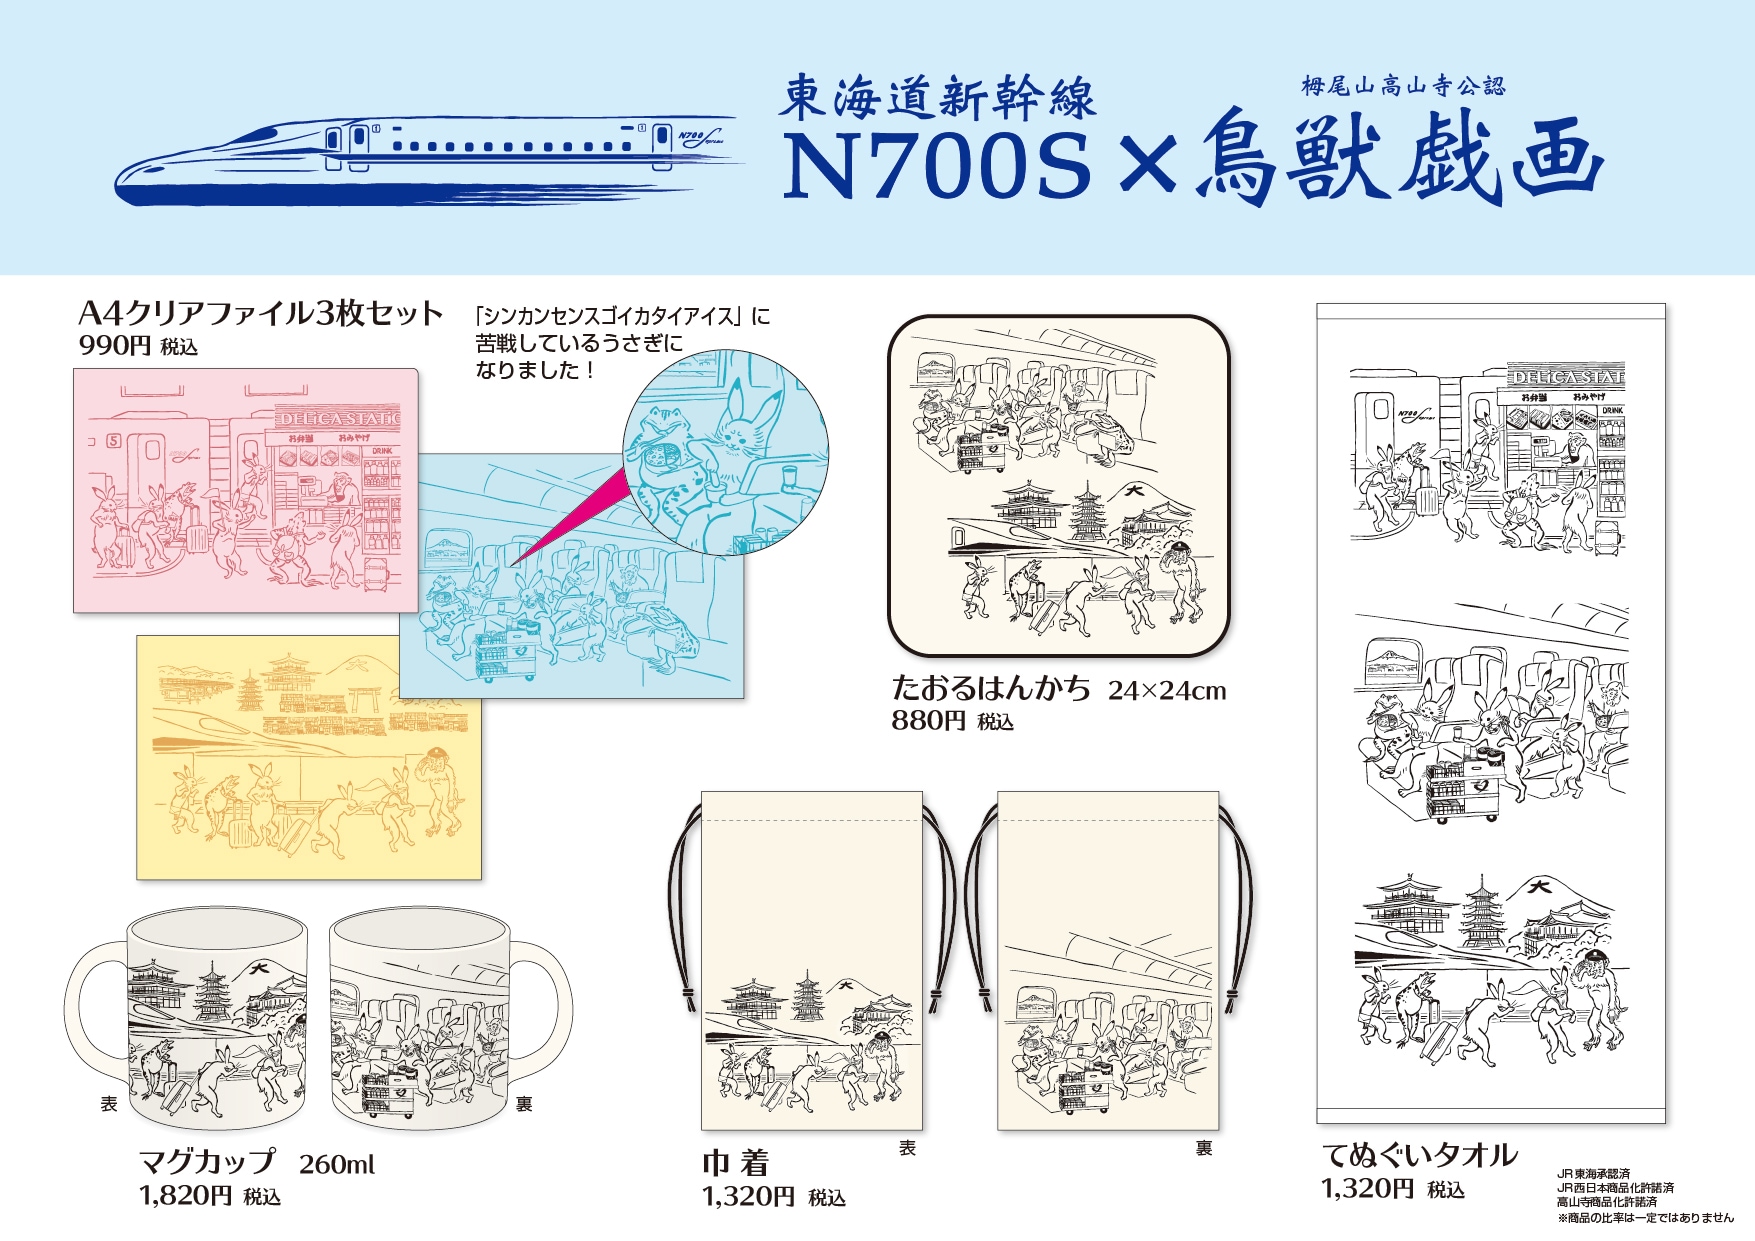 東海道新幹線N700S×鳥獣戯画コラボアイテムを発売いたします！